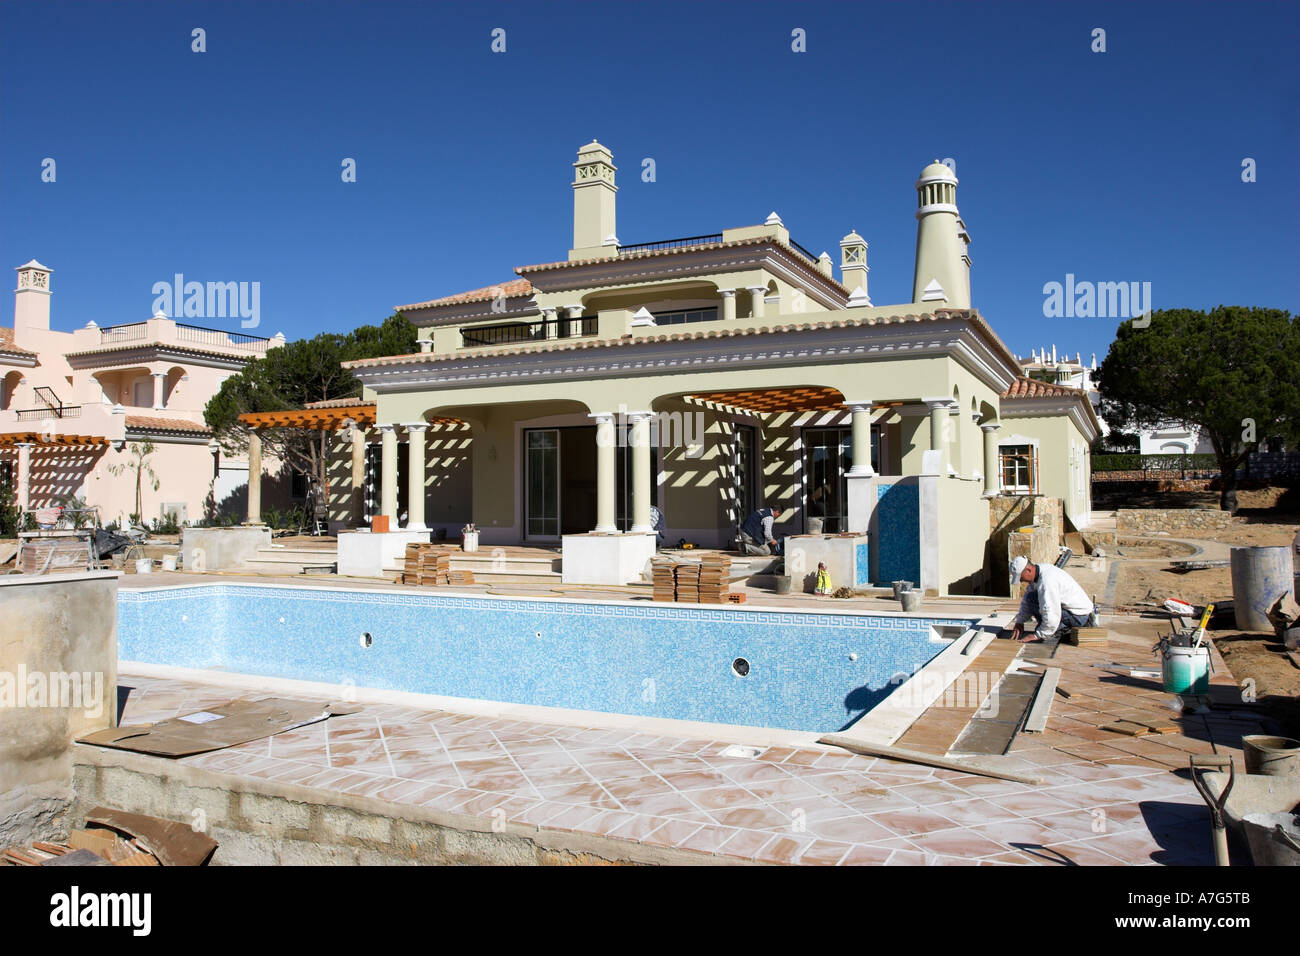 Le développement de luxe d'une toute nouvelle villa avec une grande piscine et une terrasse sur l'Algarve au Portugal. Banque D'Images